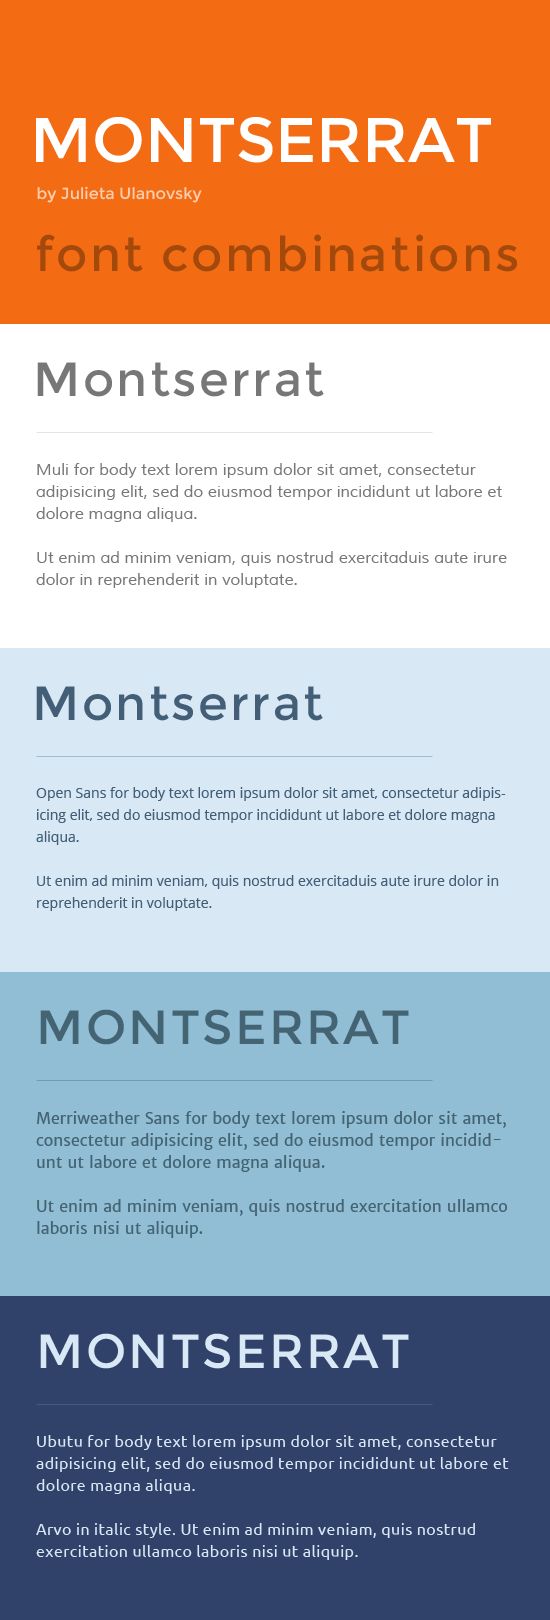 Font Combinations Montserrat